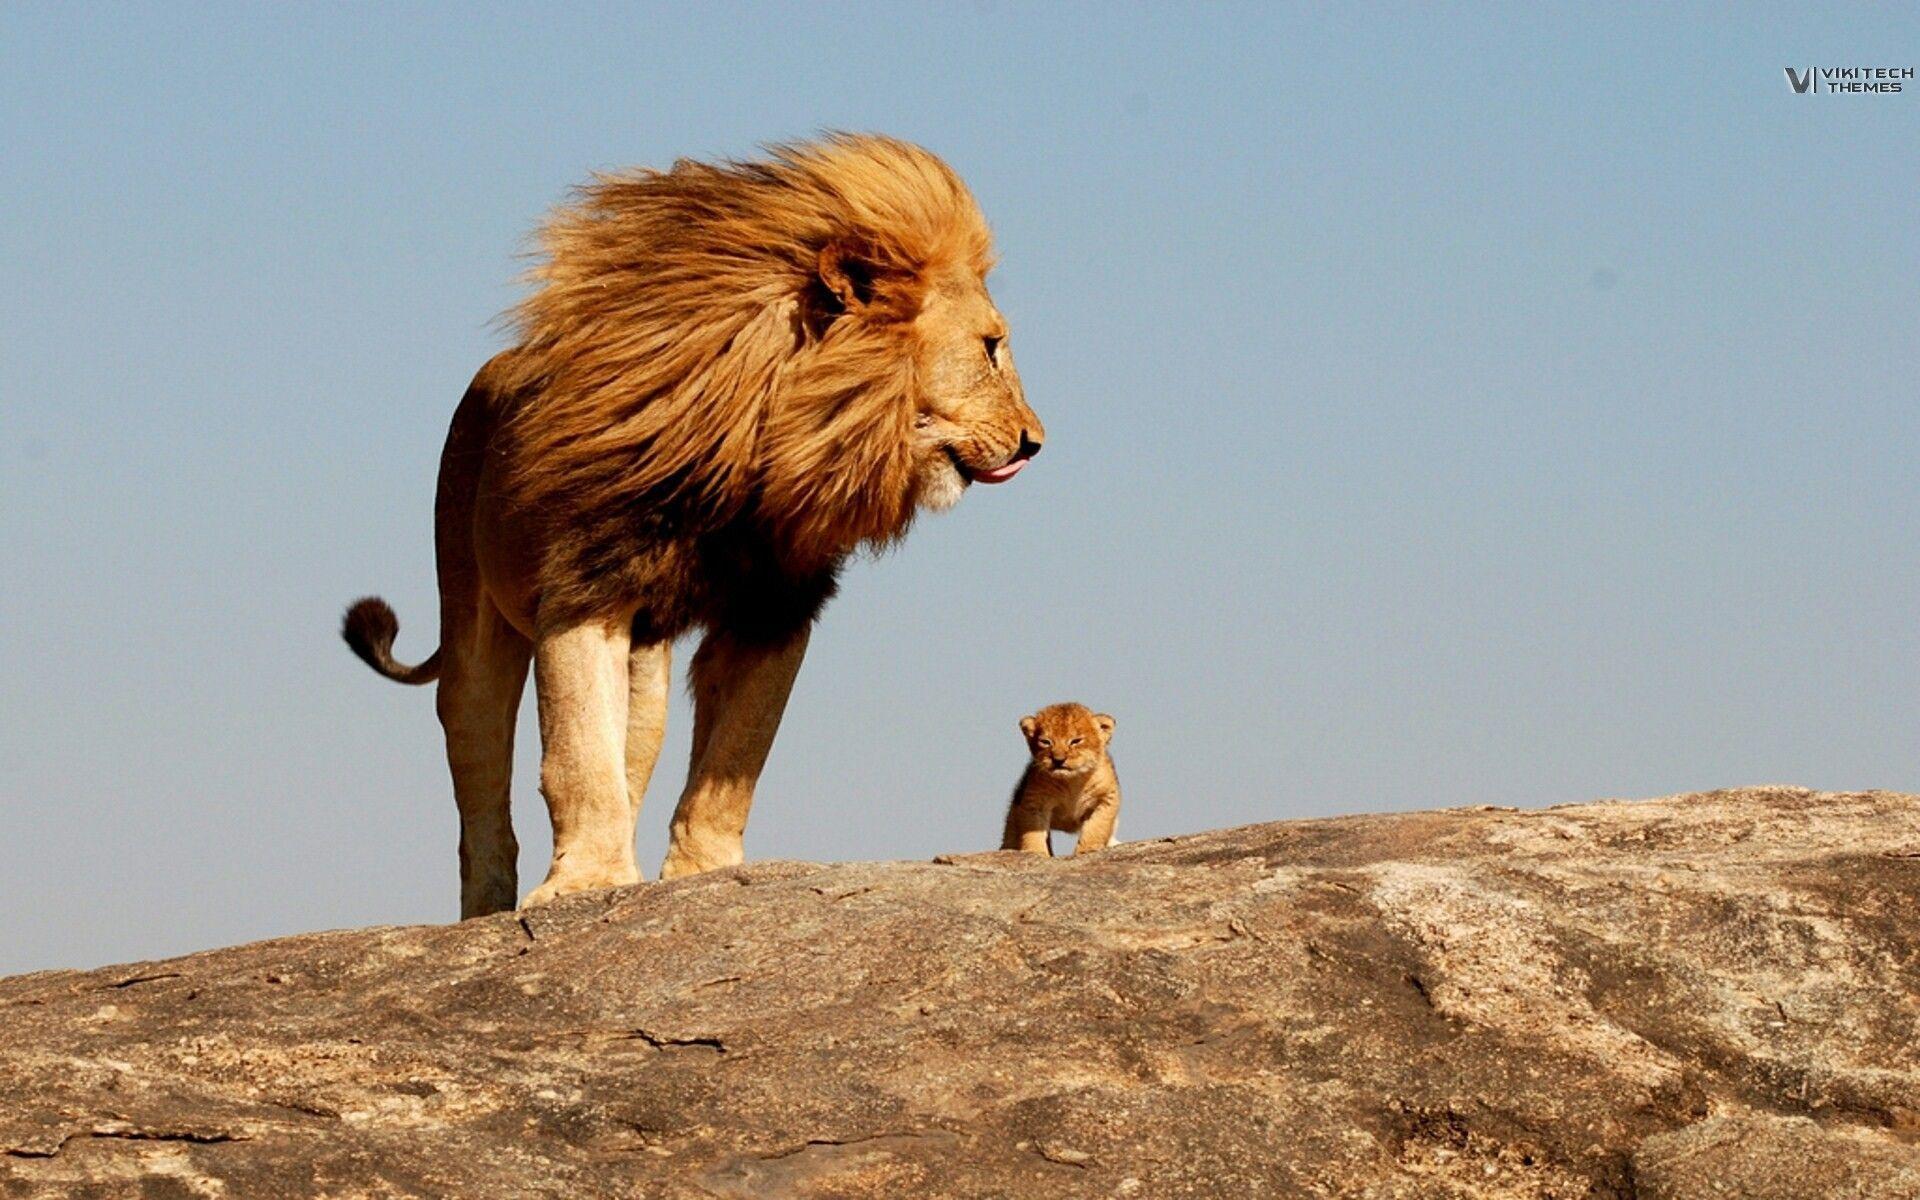 Lion, king, safari, savage wallpaper and image